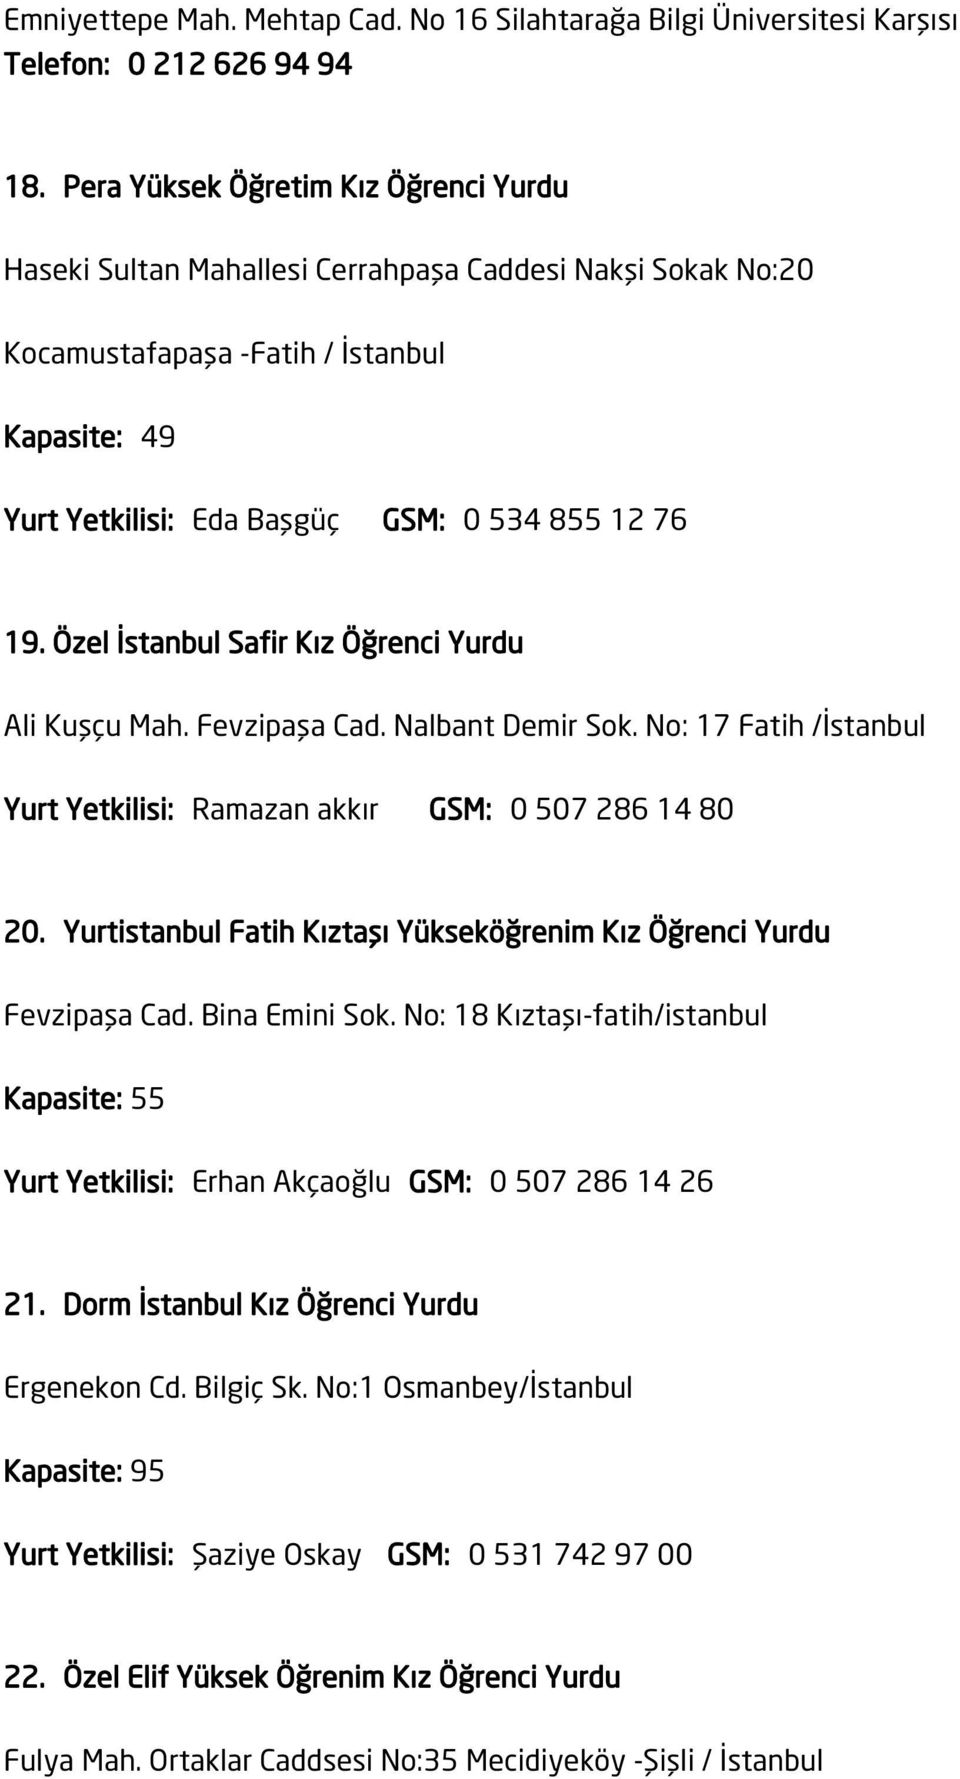 Özel İstanbul Safir Kız Öğrenci Yurdu Ali Kuşçu Mah. Fevzipaşa Cad. Nalbant Demir Sok. No: 17 Fatih /İstanbul Yurt Yetkilisi: Ramazan akkır GSM: 0 507 286 14 80 20.